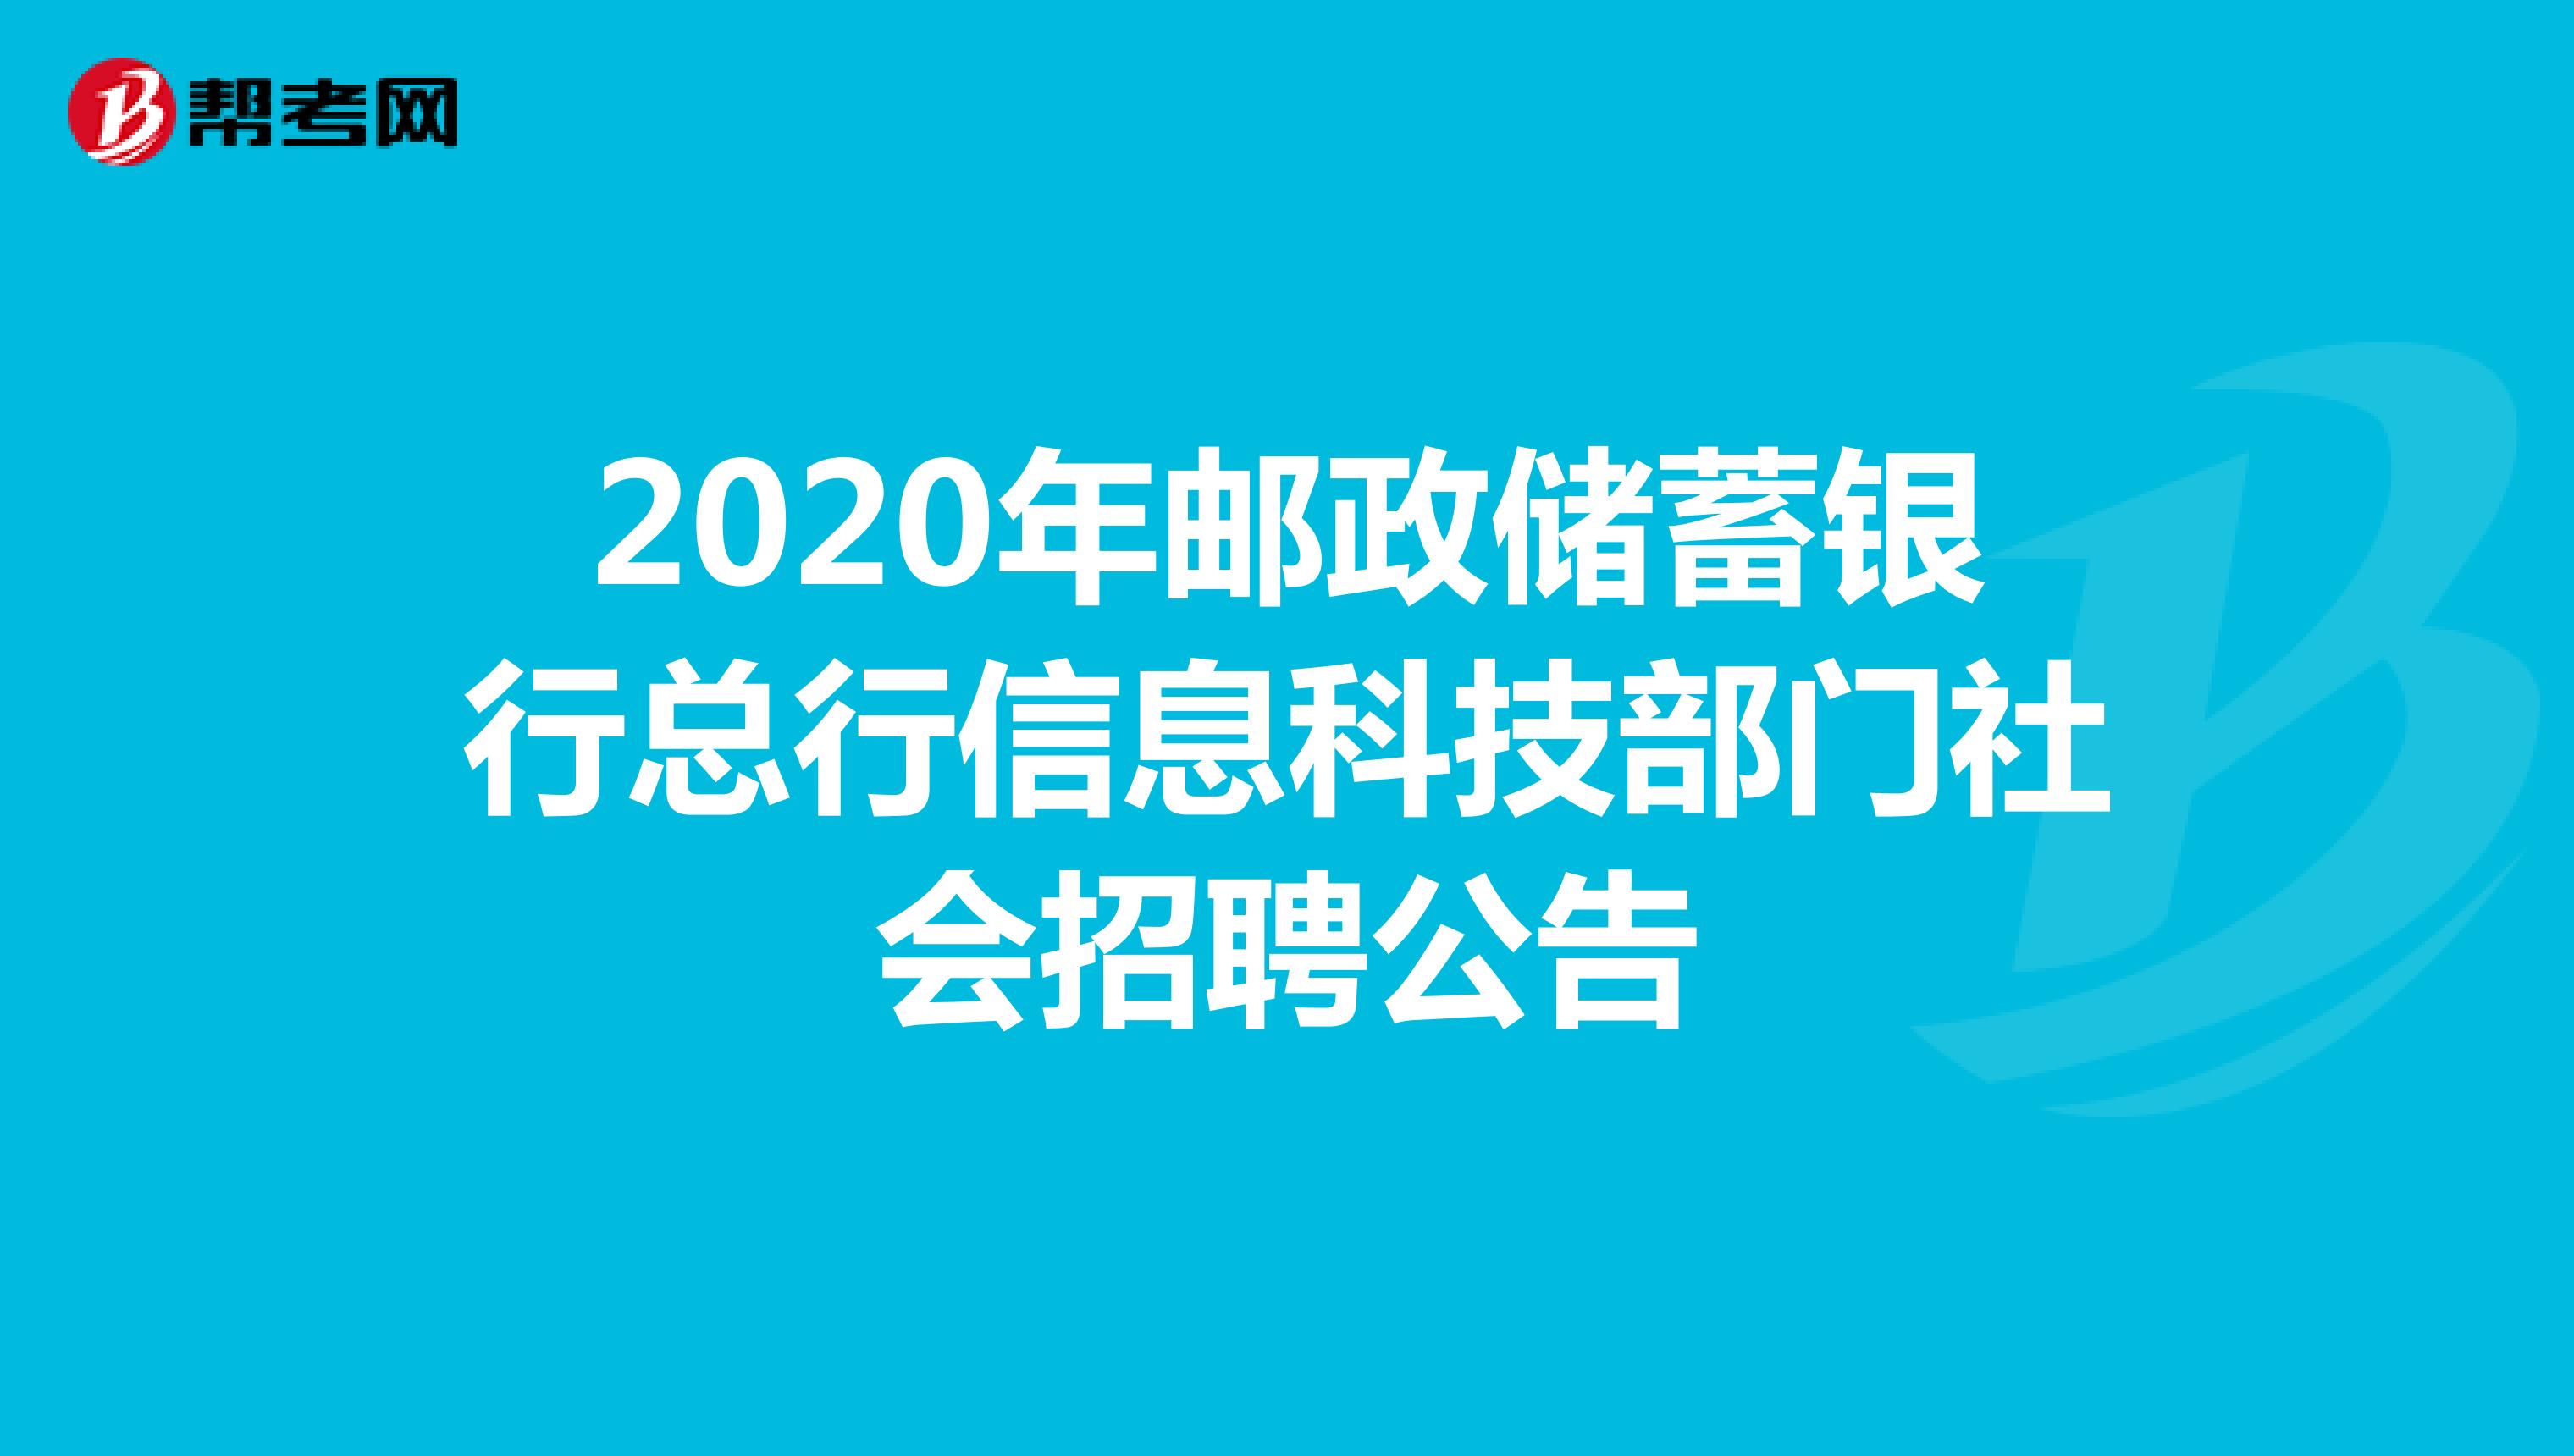 2020年邮政储蓄银行总行信息科技部门社会招聘公告 